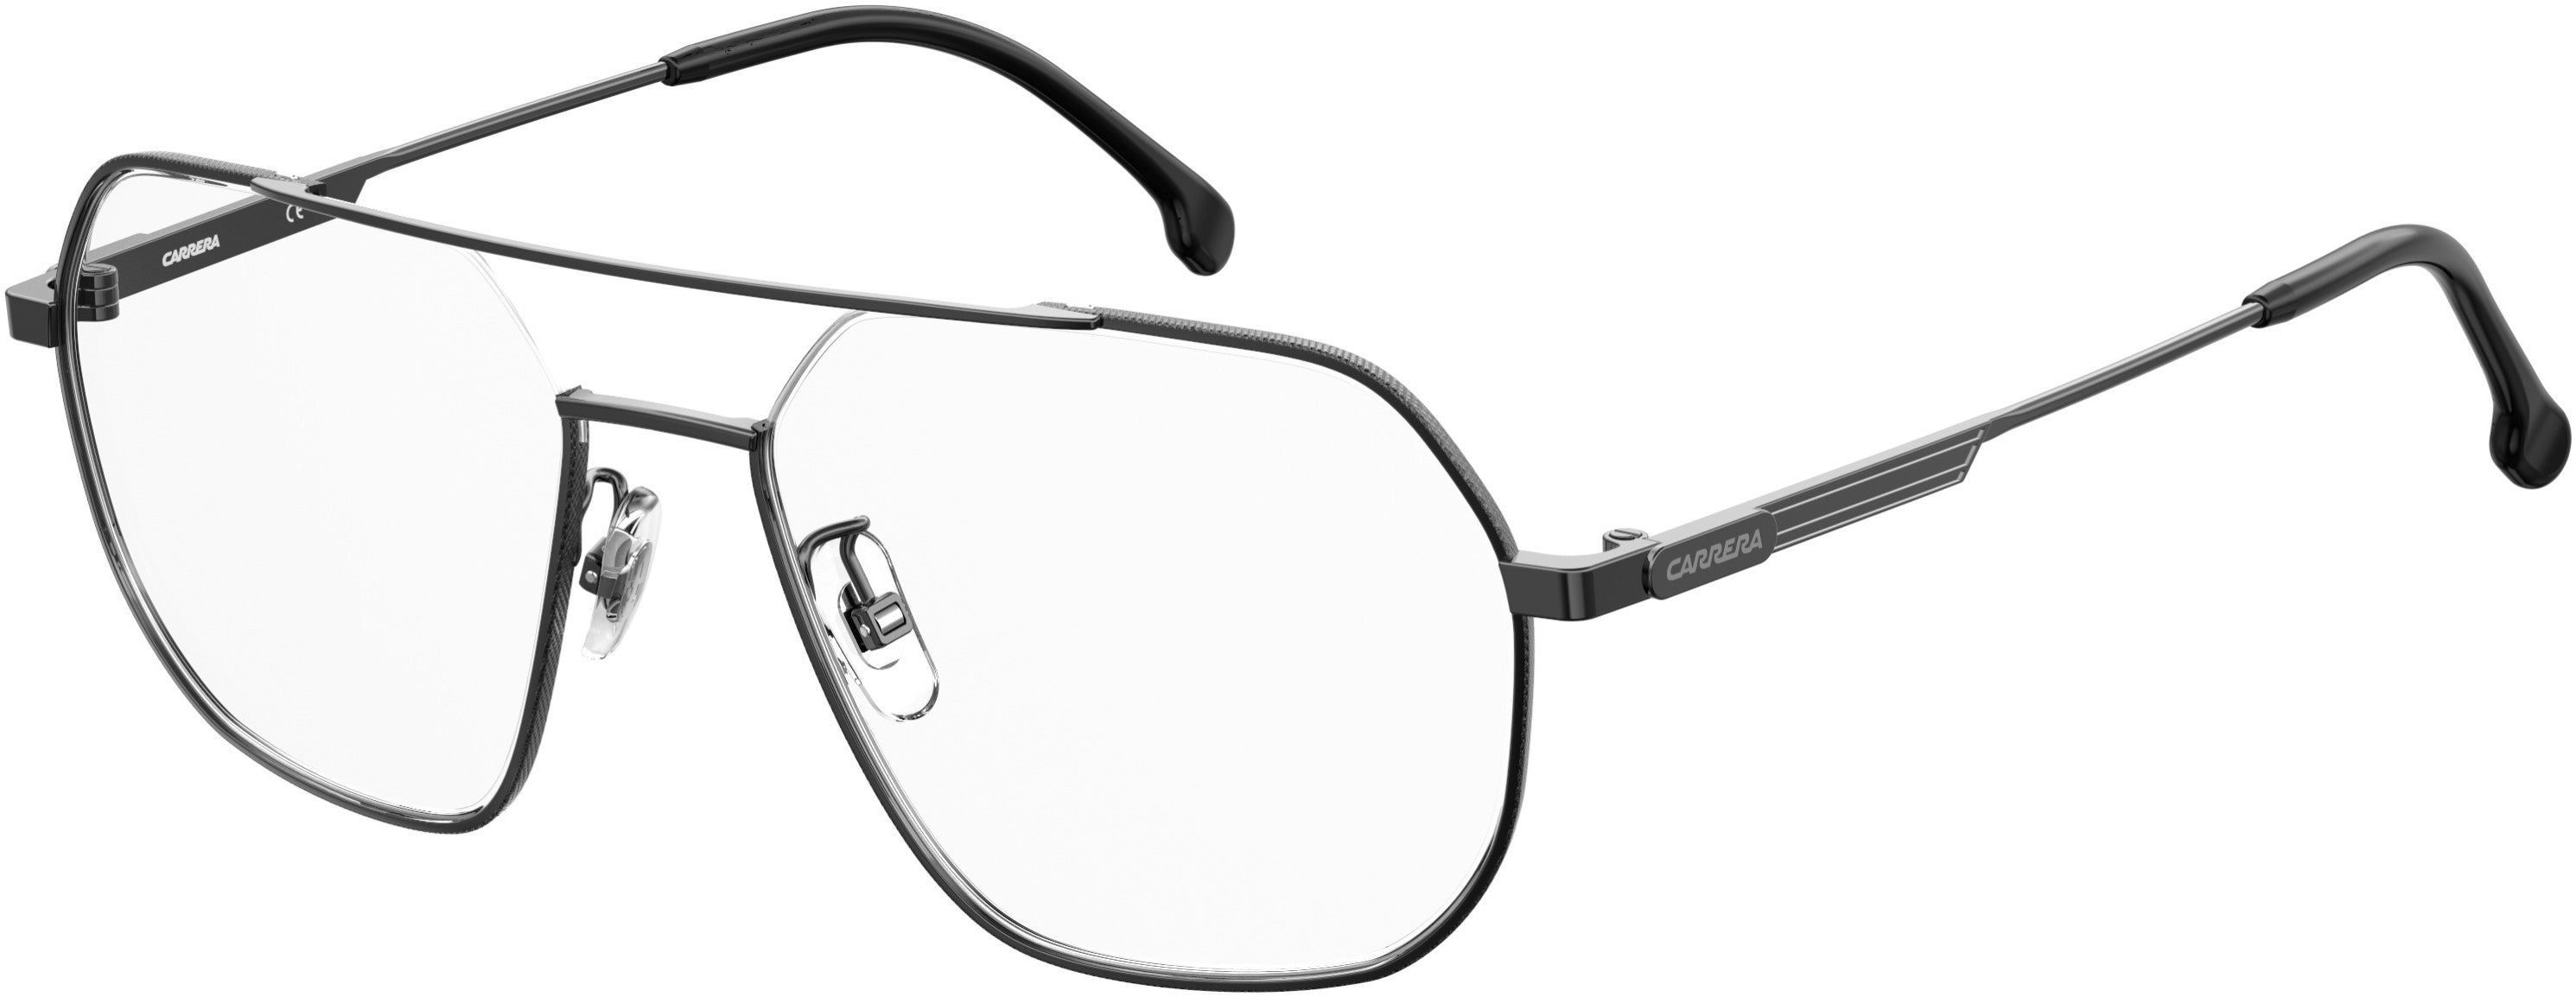  Carrera 1114/G Rectangular Eyeglasses 0V81-0V81  Dark Ruthenium Black (00 Demo Lens)